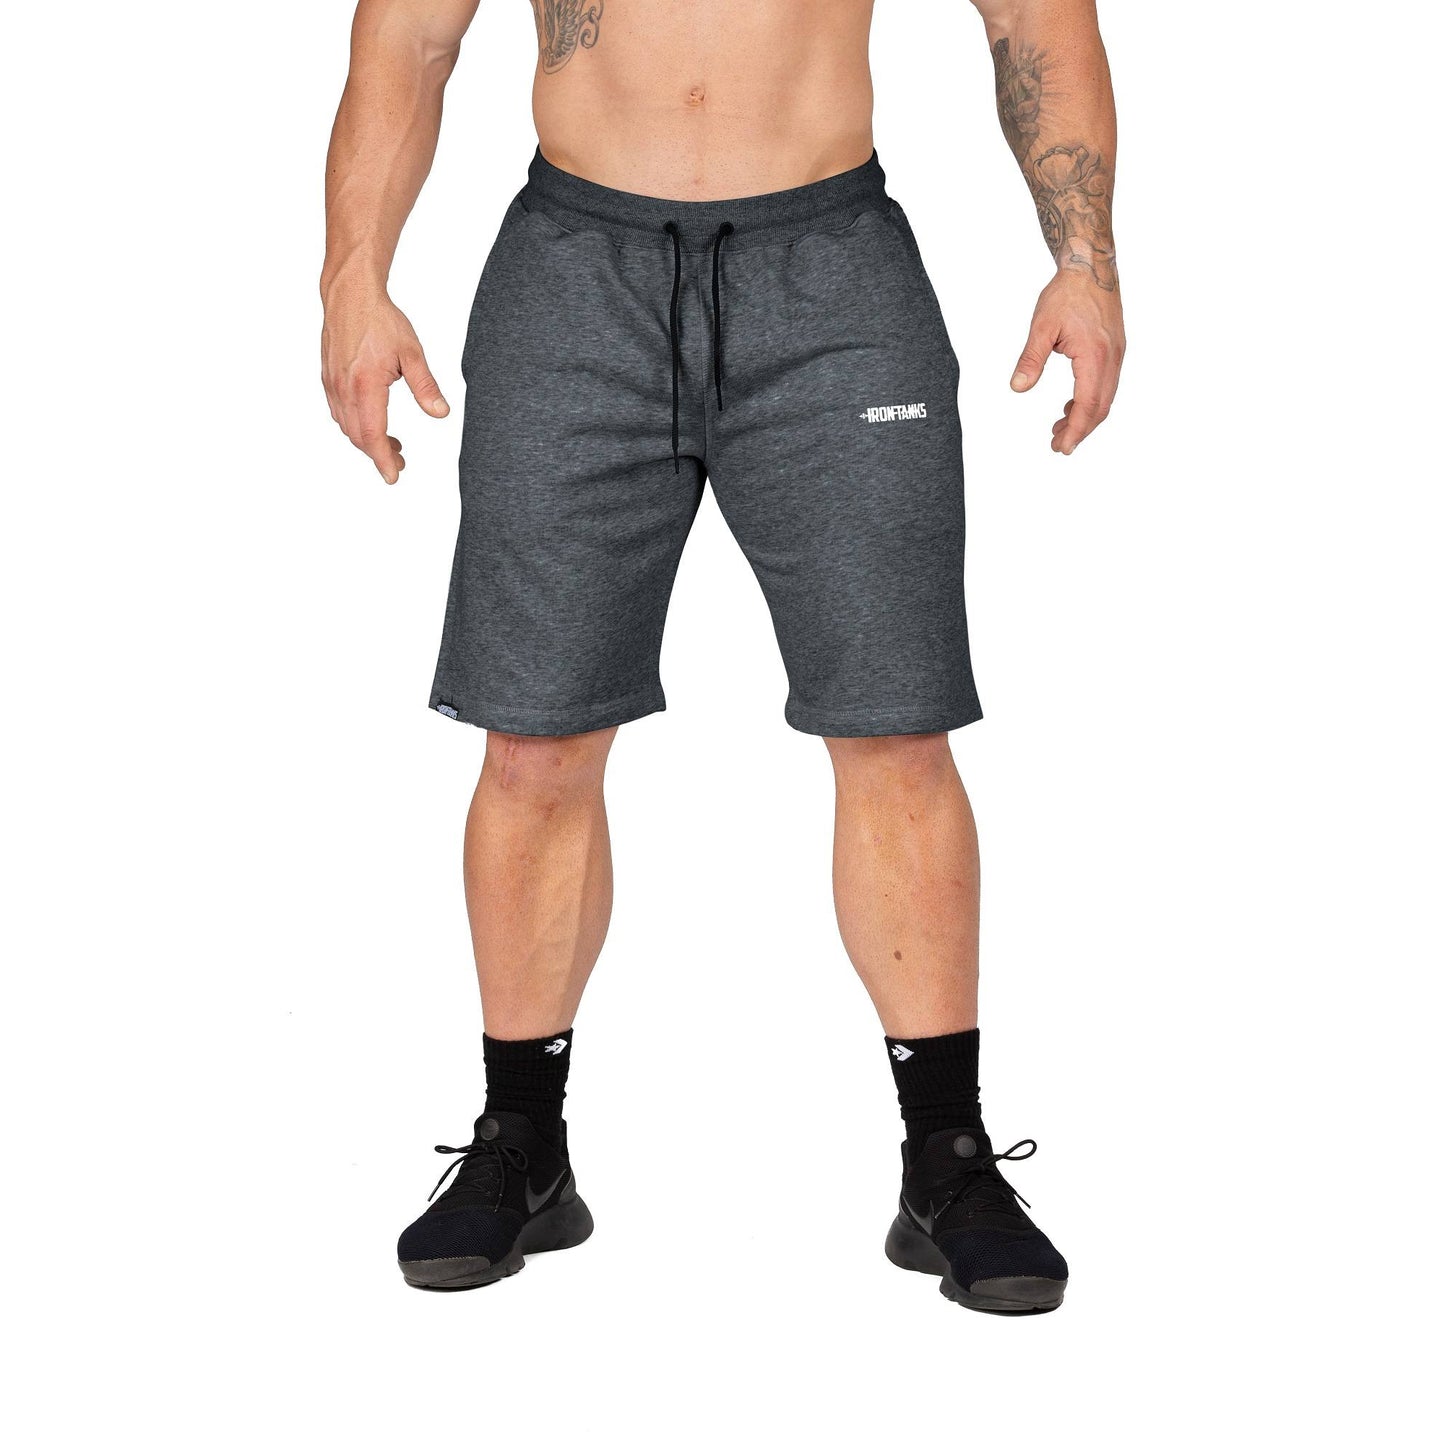 Iron Tanks Men's BFG Gym Shorts II (Carbon Grey)